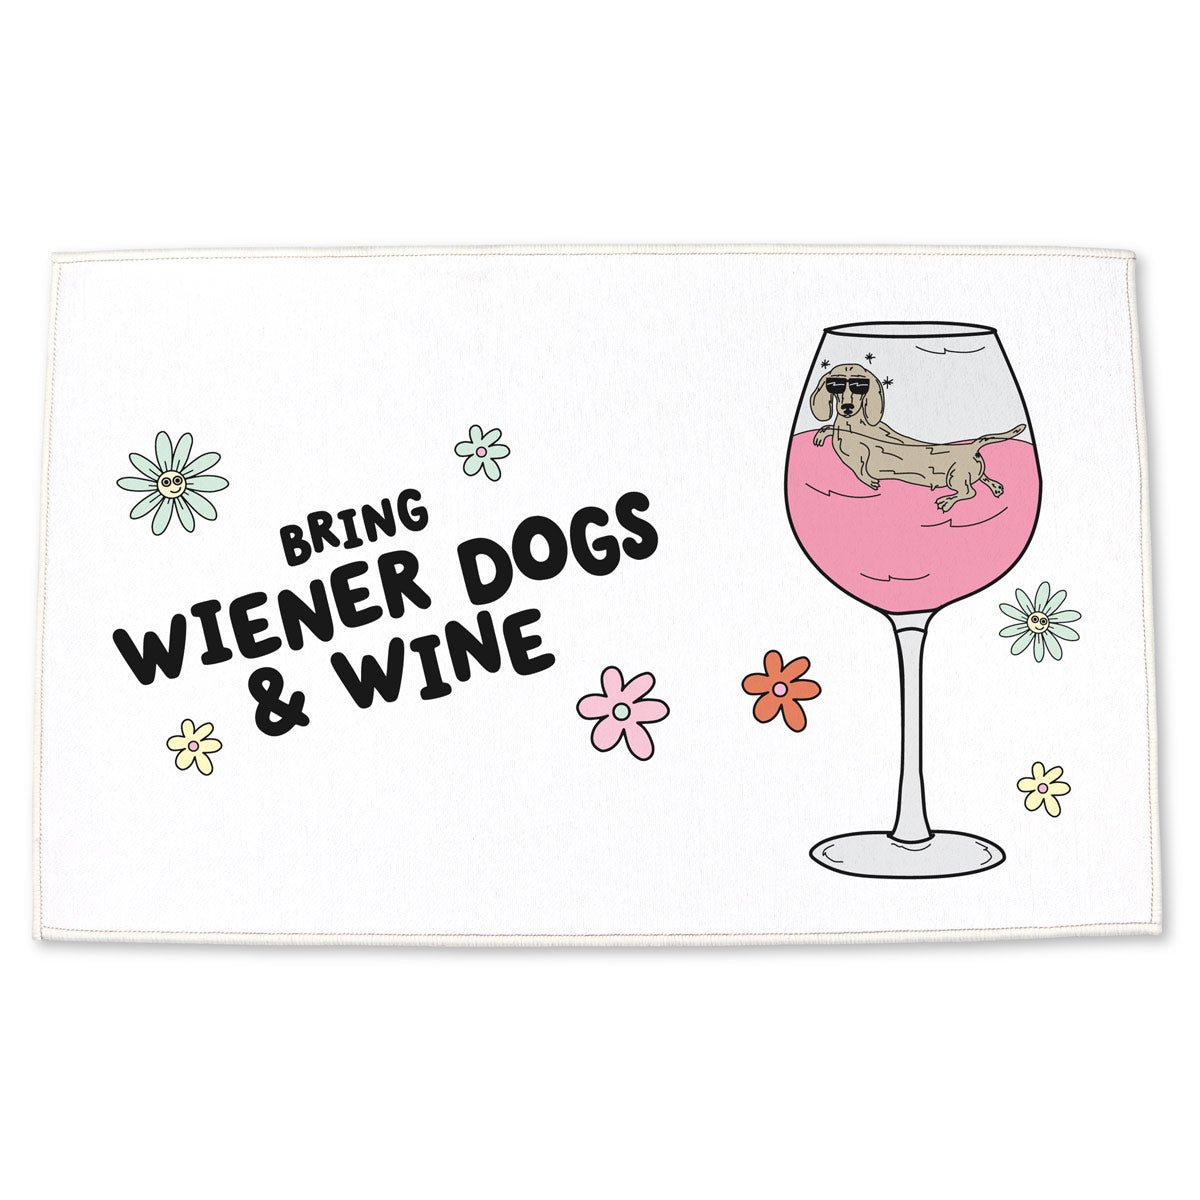 bring wiener dogs & wine door mat - bean goods